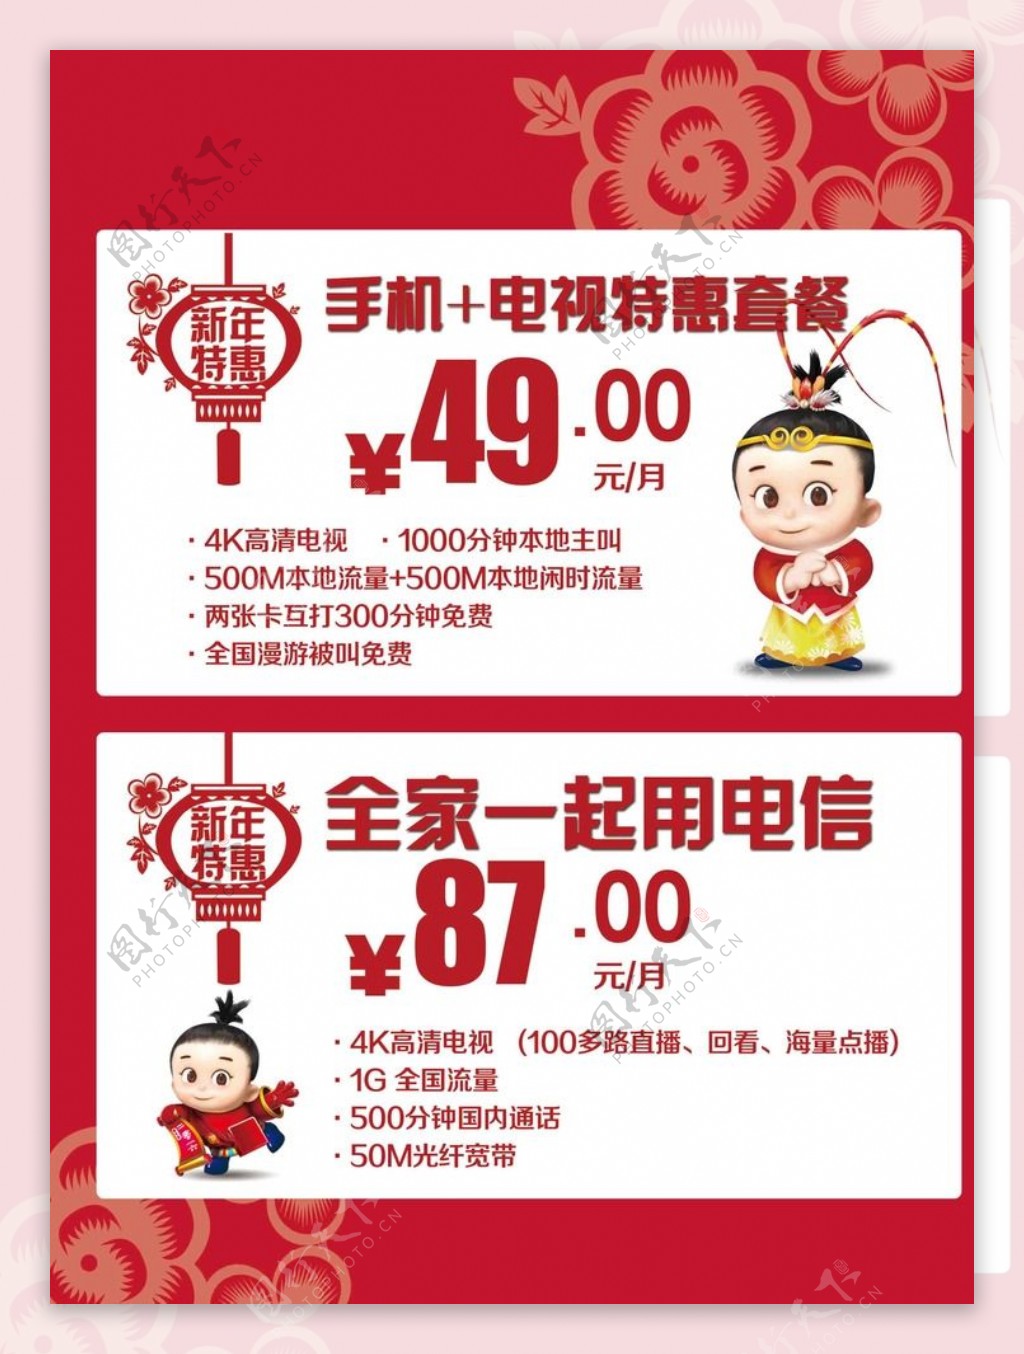 中国电信套餐单页